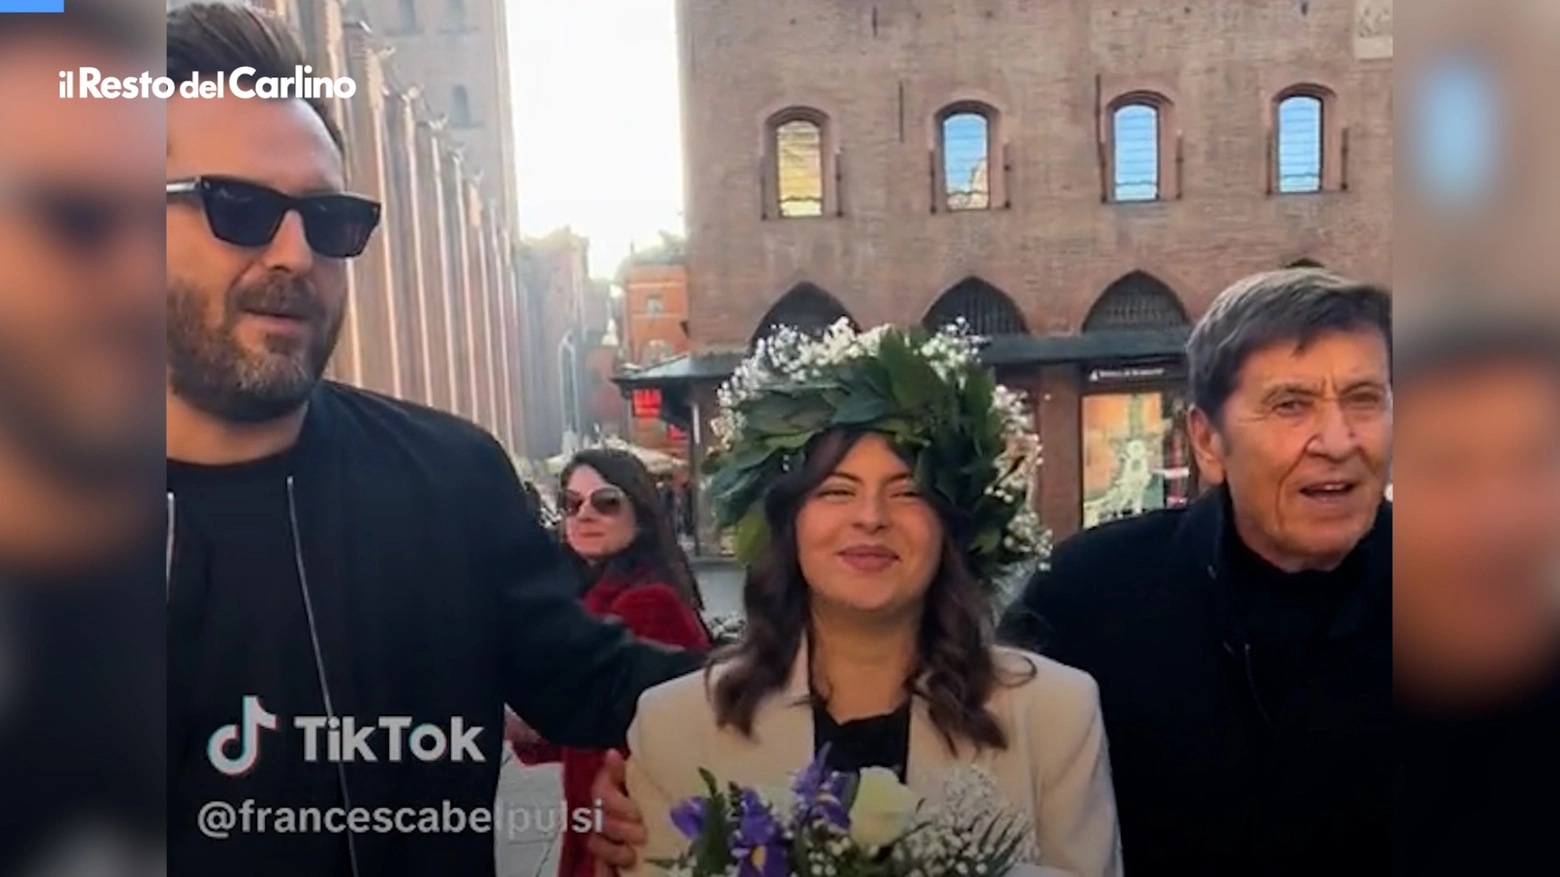 Una studentessa ha incontrato i due artisti in piazza Maggiore, il momento è stato immortalato da un video pubblicato su TikTok che è diventato virale